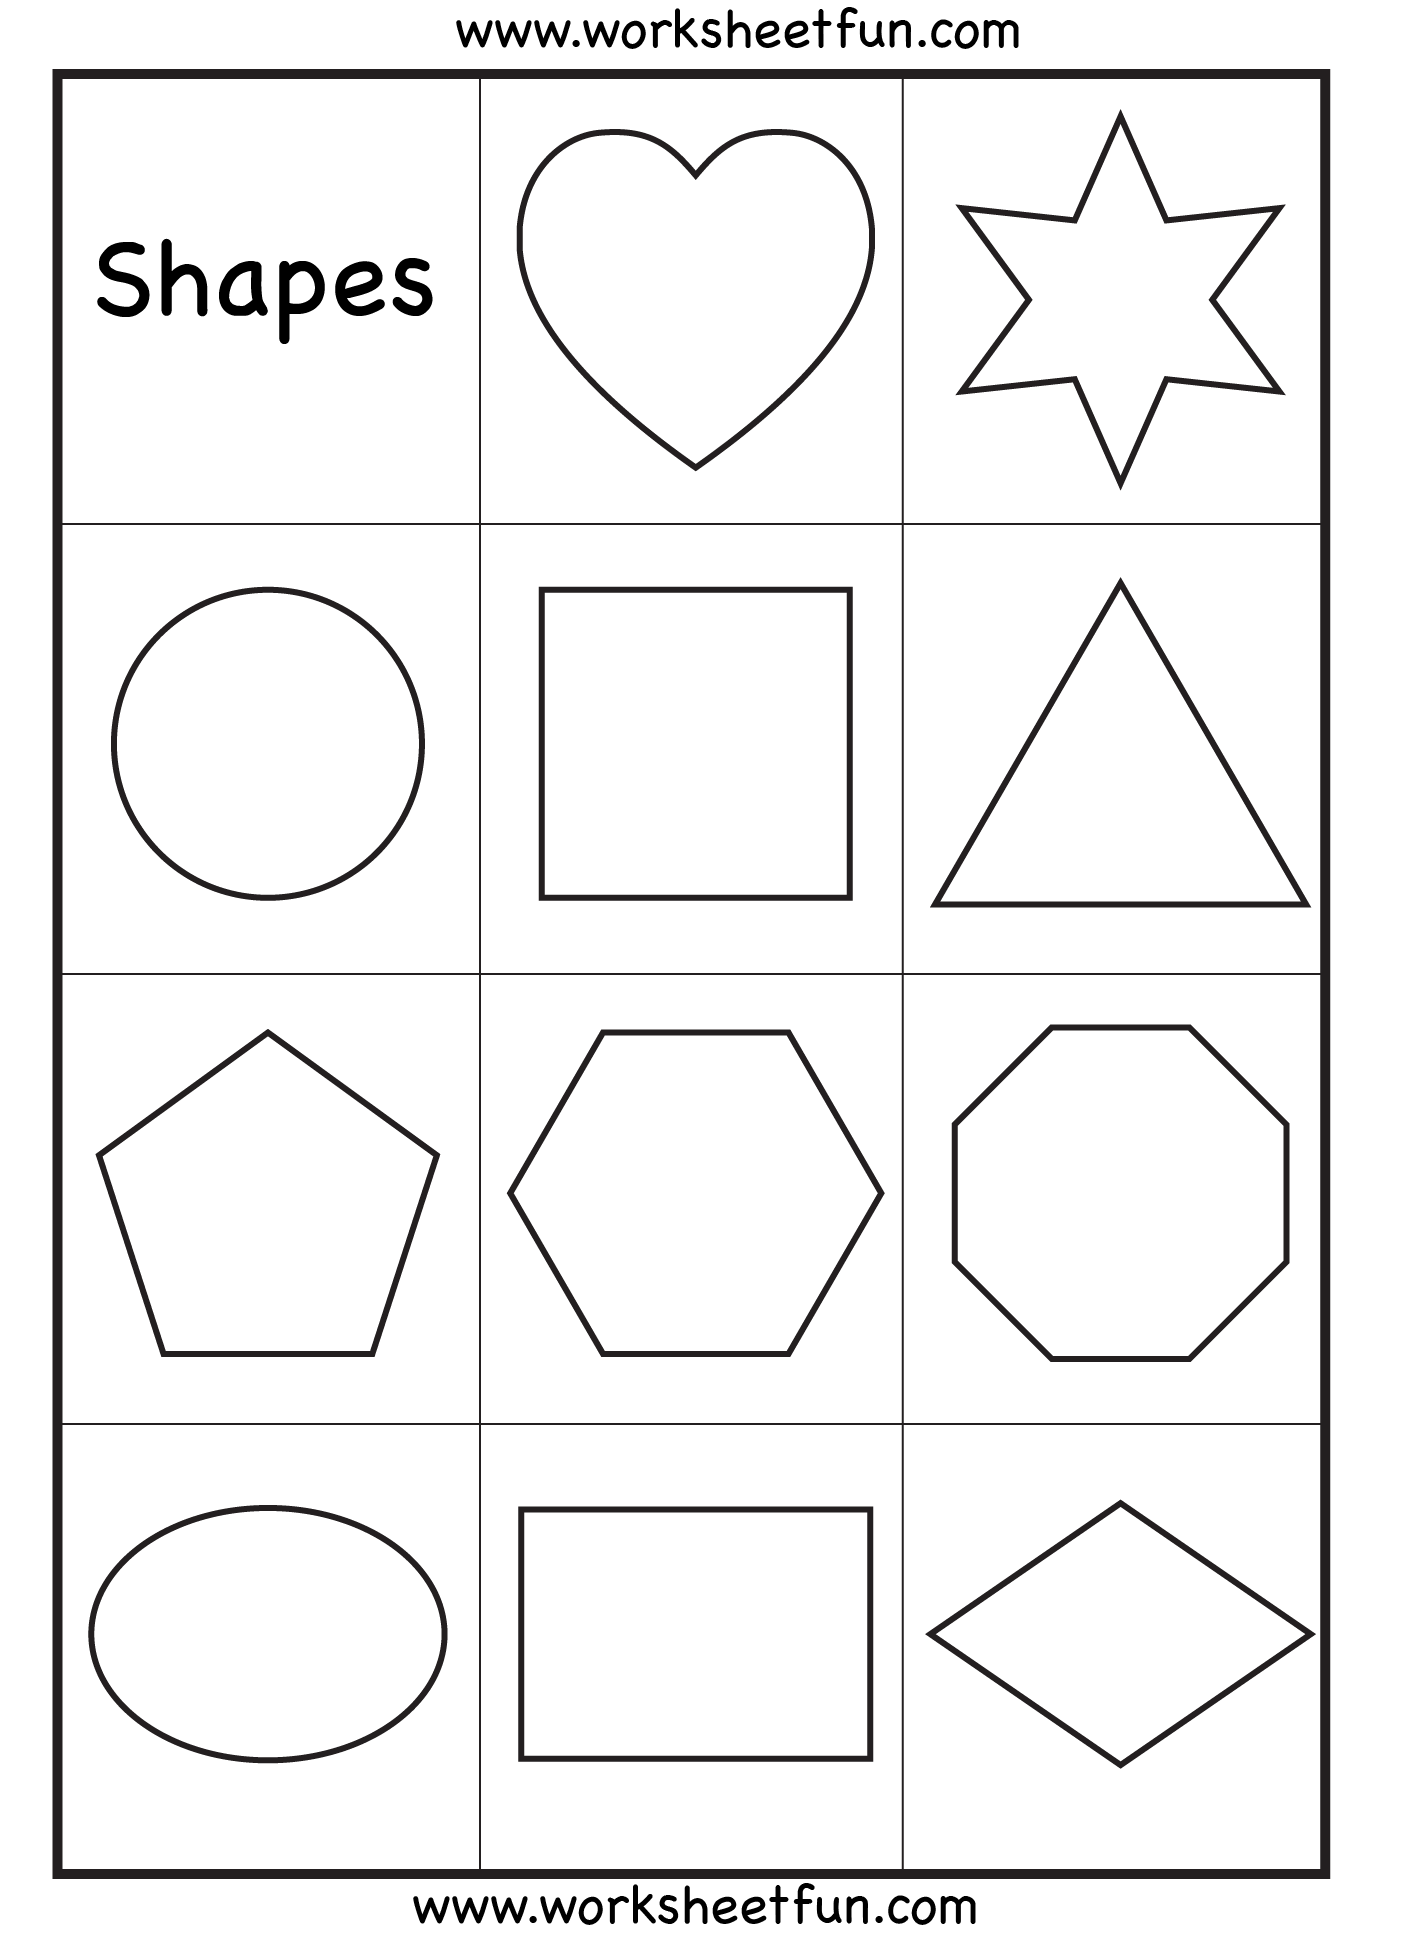 6 Best Images of Basic Shapes Printables - Basic Geometric Shapes